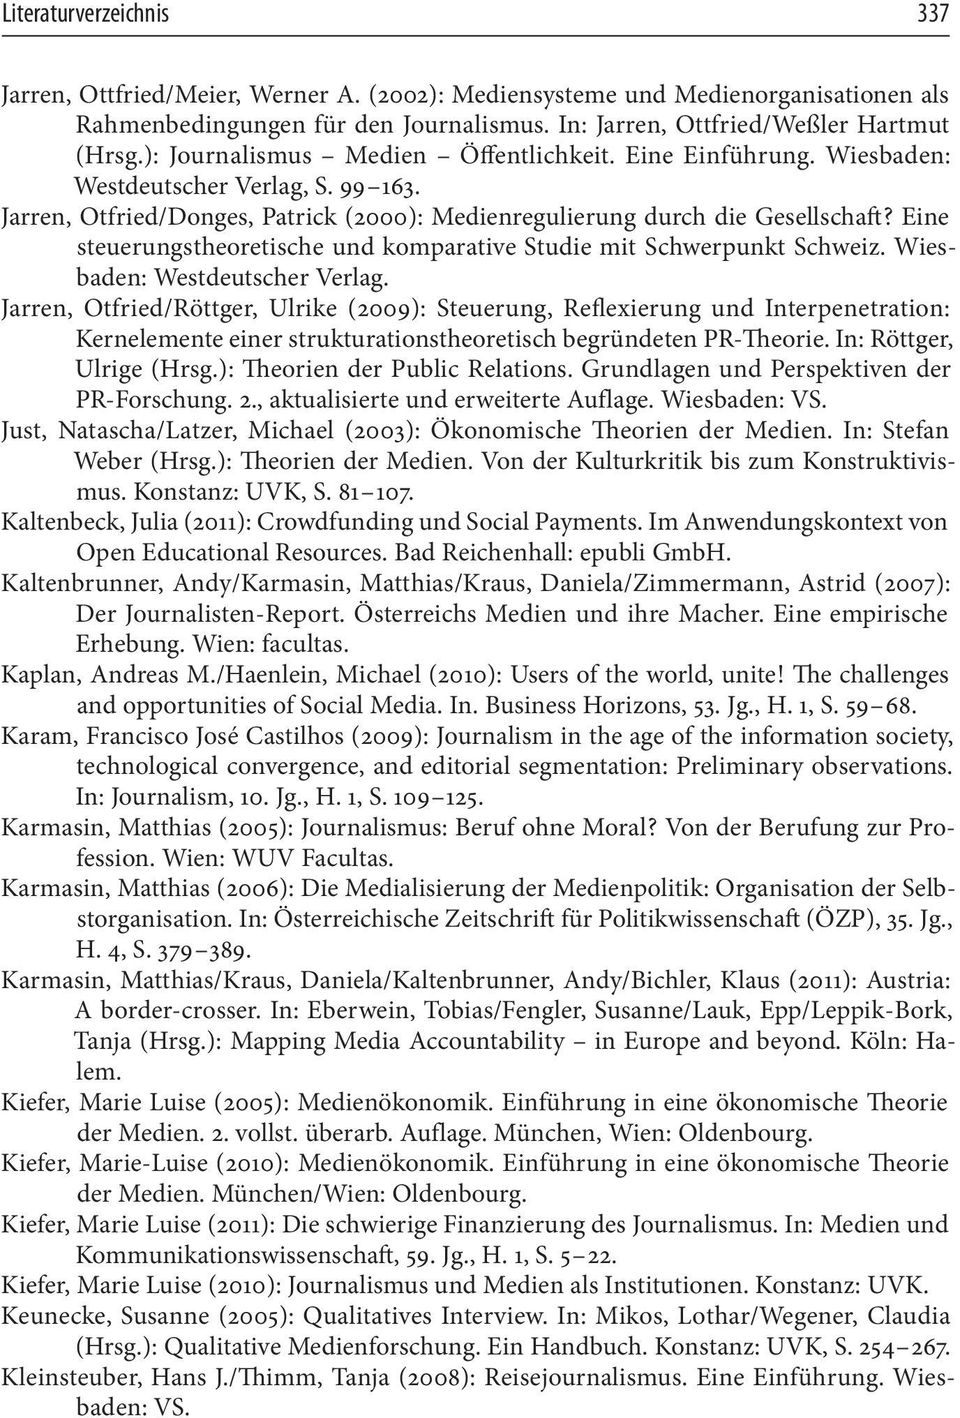 Eine steuerungstheoretische und komparative Studie mit Schwerpunkt Schweiz. Wiesbaden: Westdeutscher Verlag.